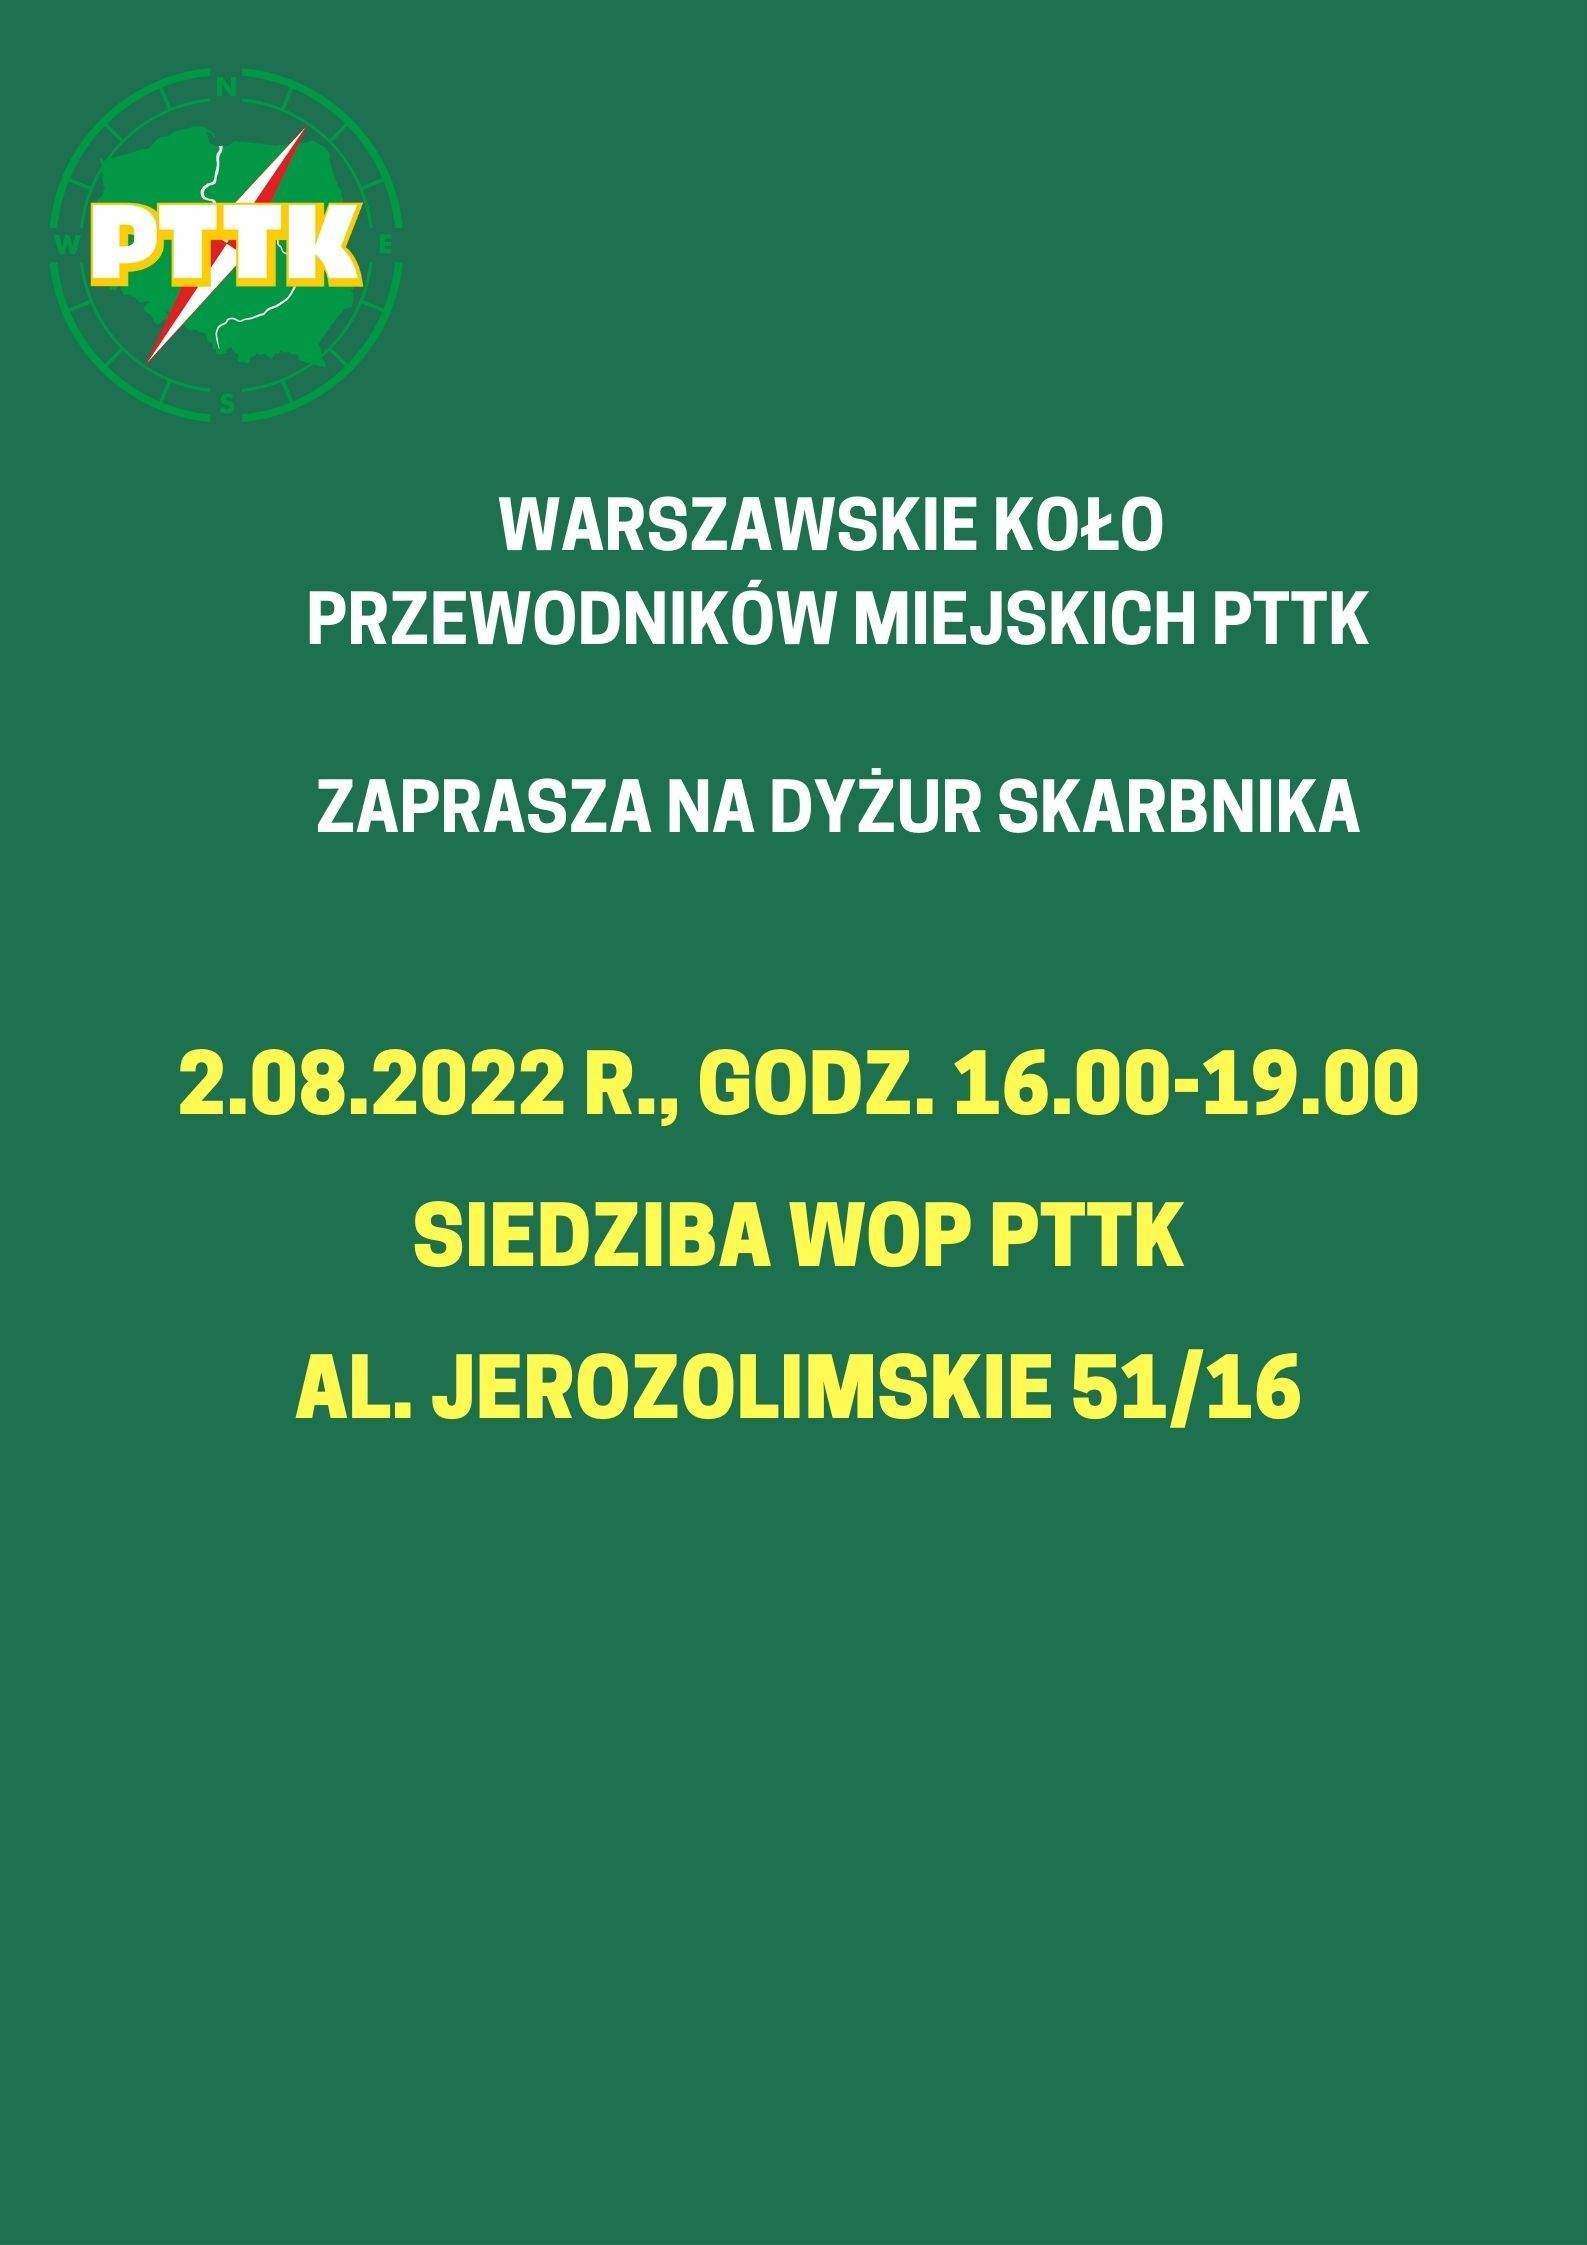 Dyżur skarbnika WKPM w dniu 2.08.2022, godz. 16.00-19.00